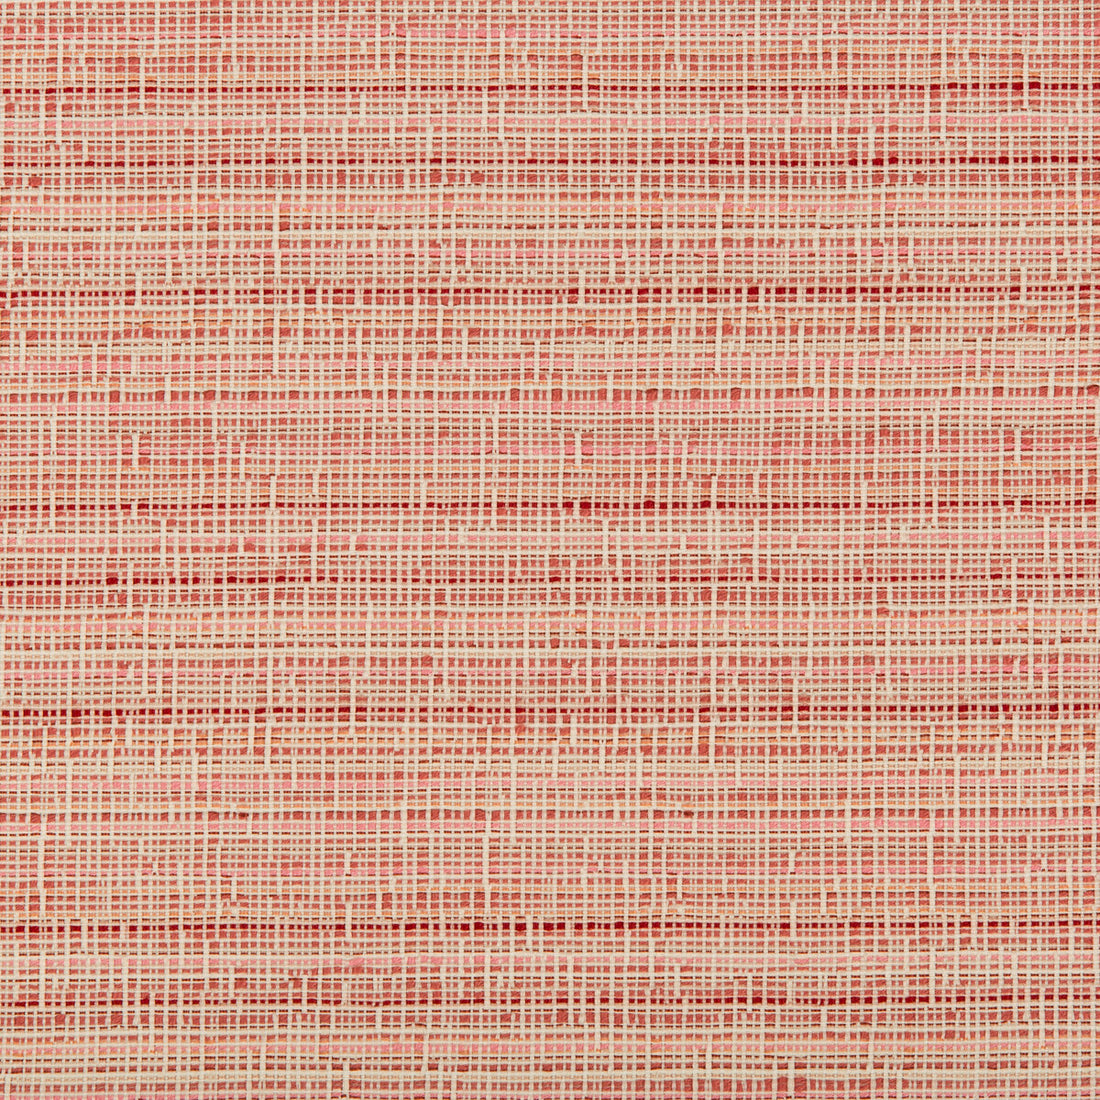 Kravet Basics fabric in 35471-17 color - pattern 35471.17.0 - by Kravet Basics